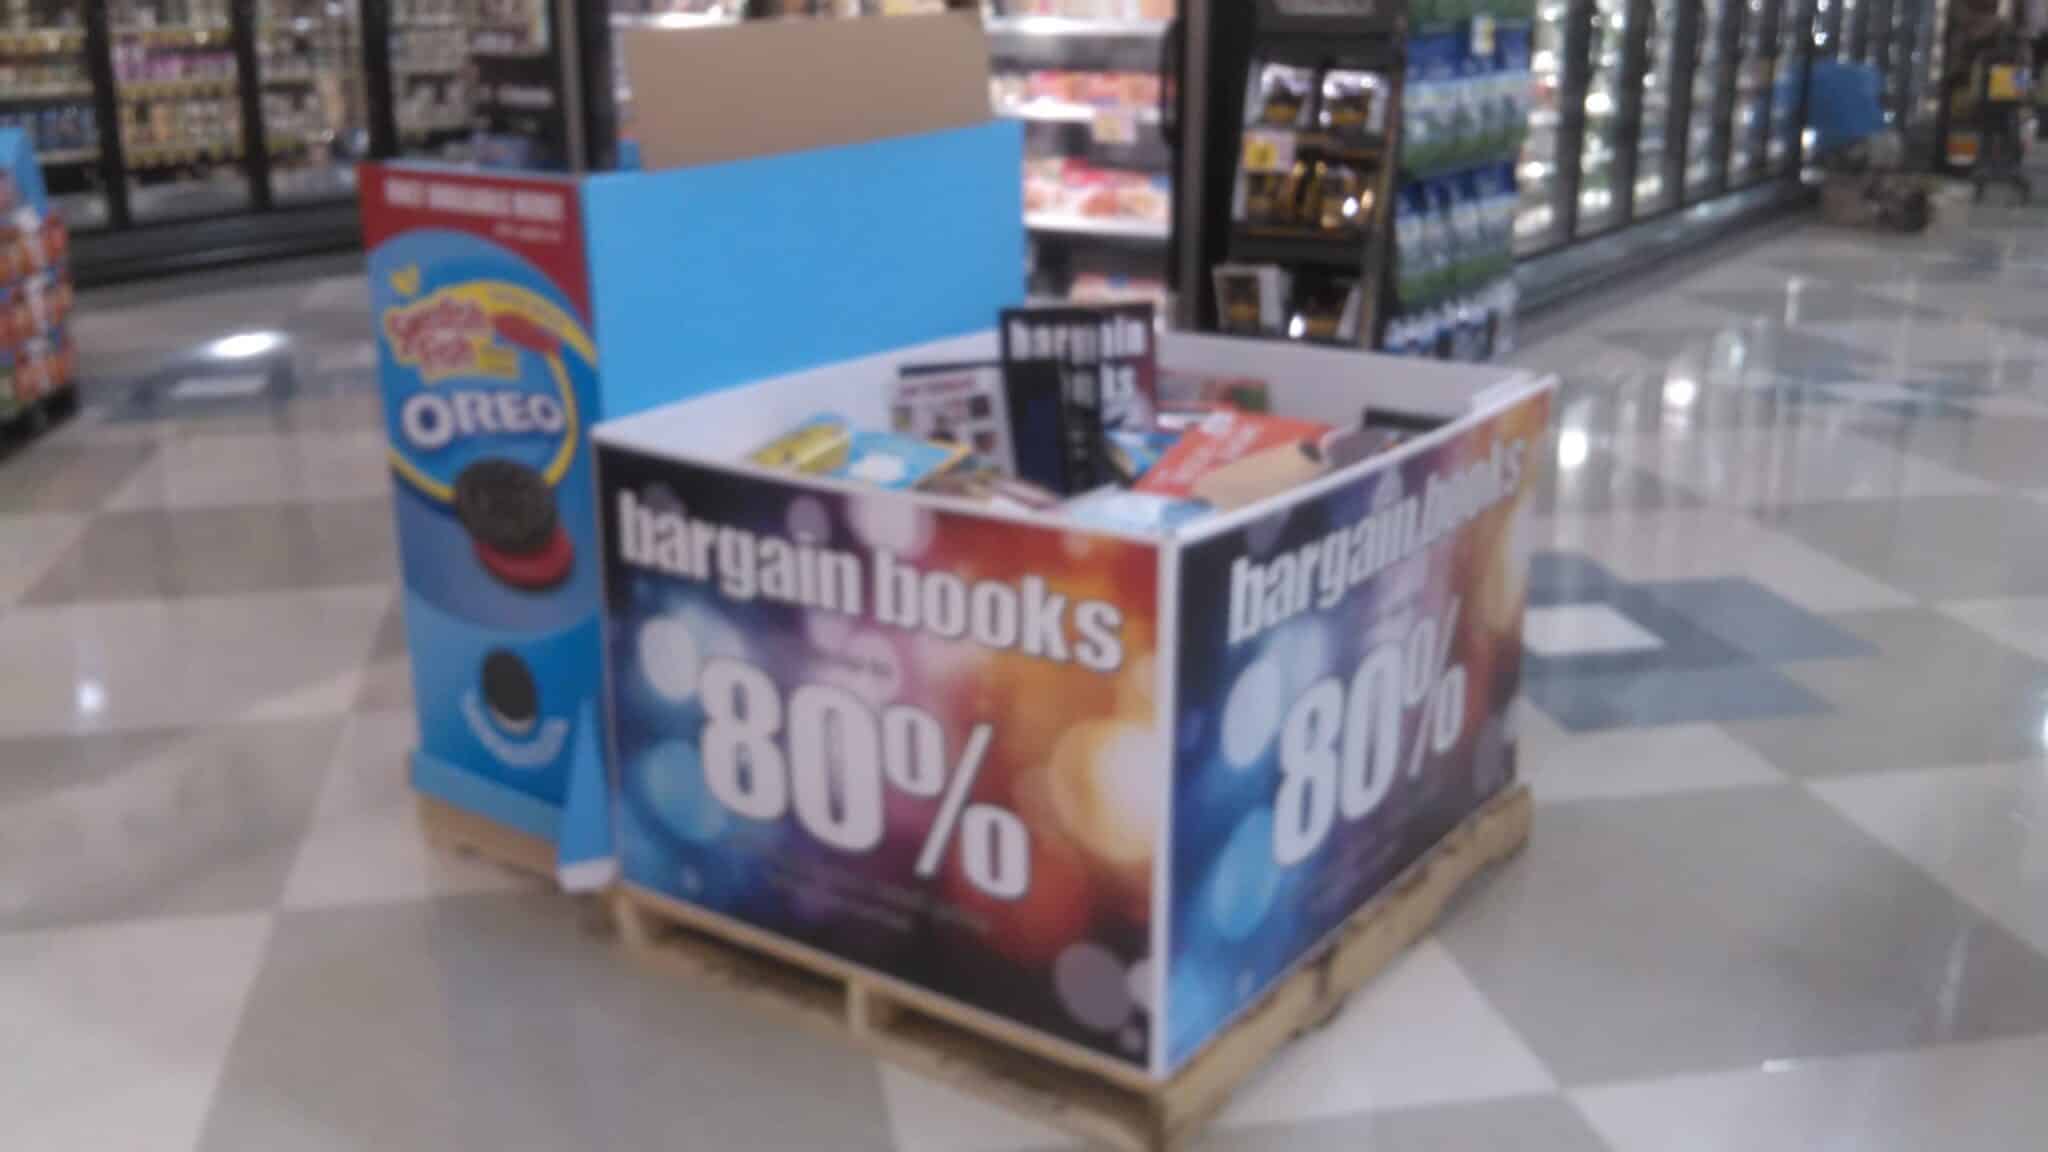 Image result for bargain bin books